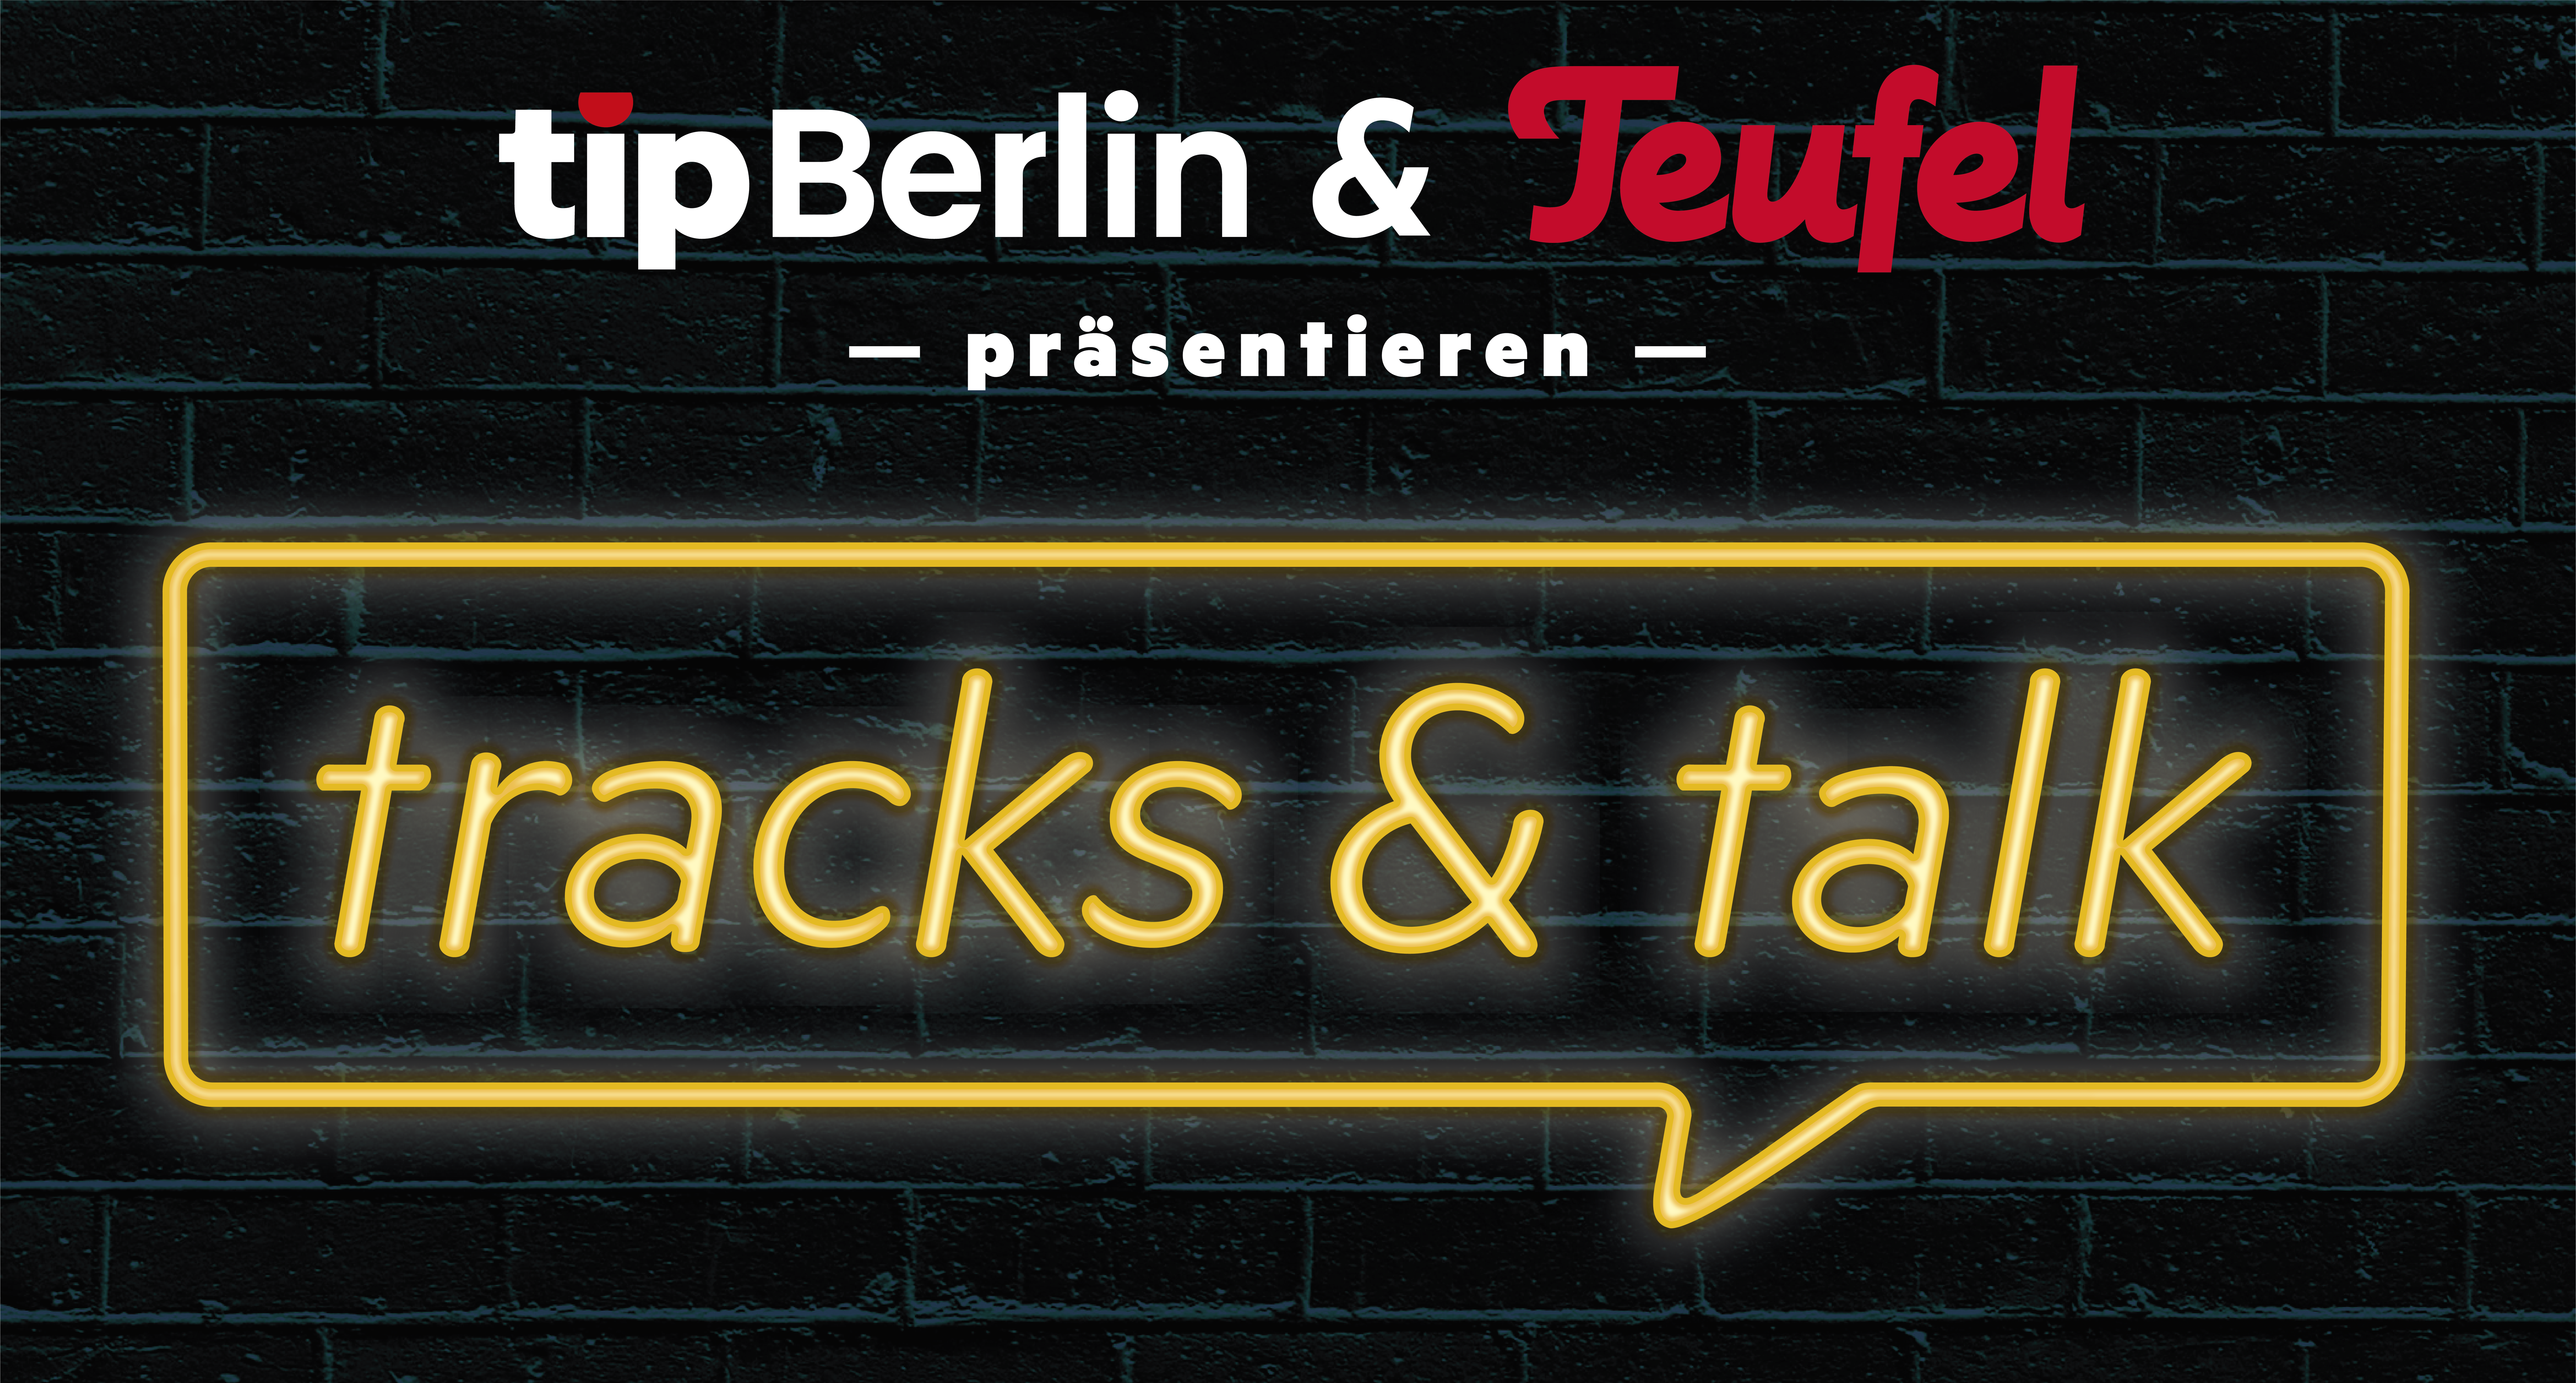 Die neue Infotainment-Reihe des tipBerlin in Kooperation mit dem Berliner Audiospezialisten Teufel